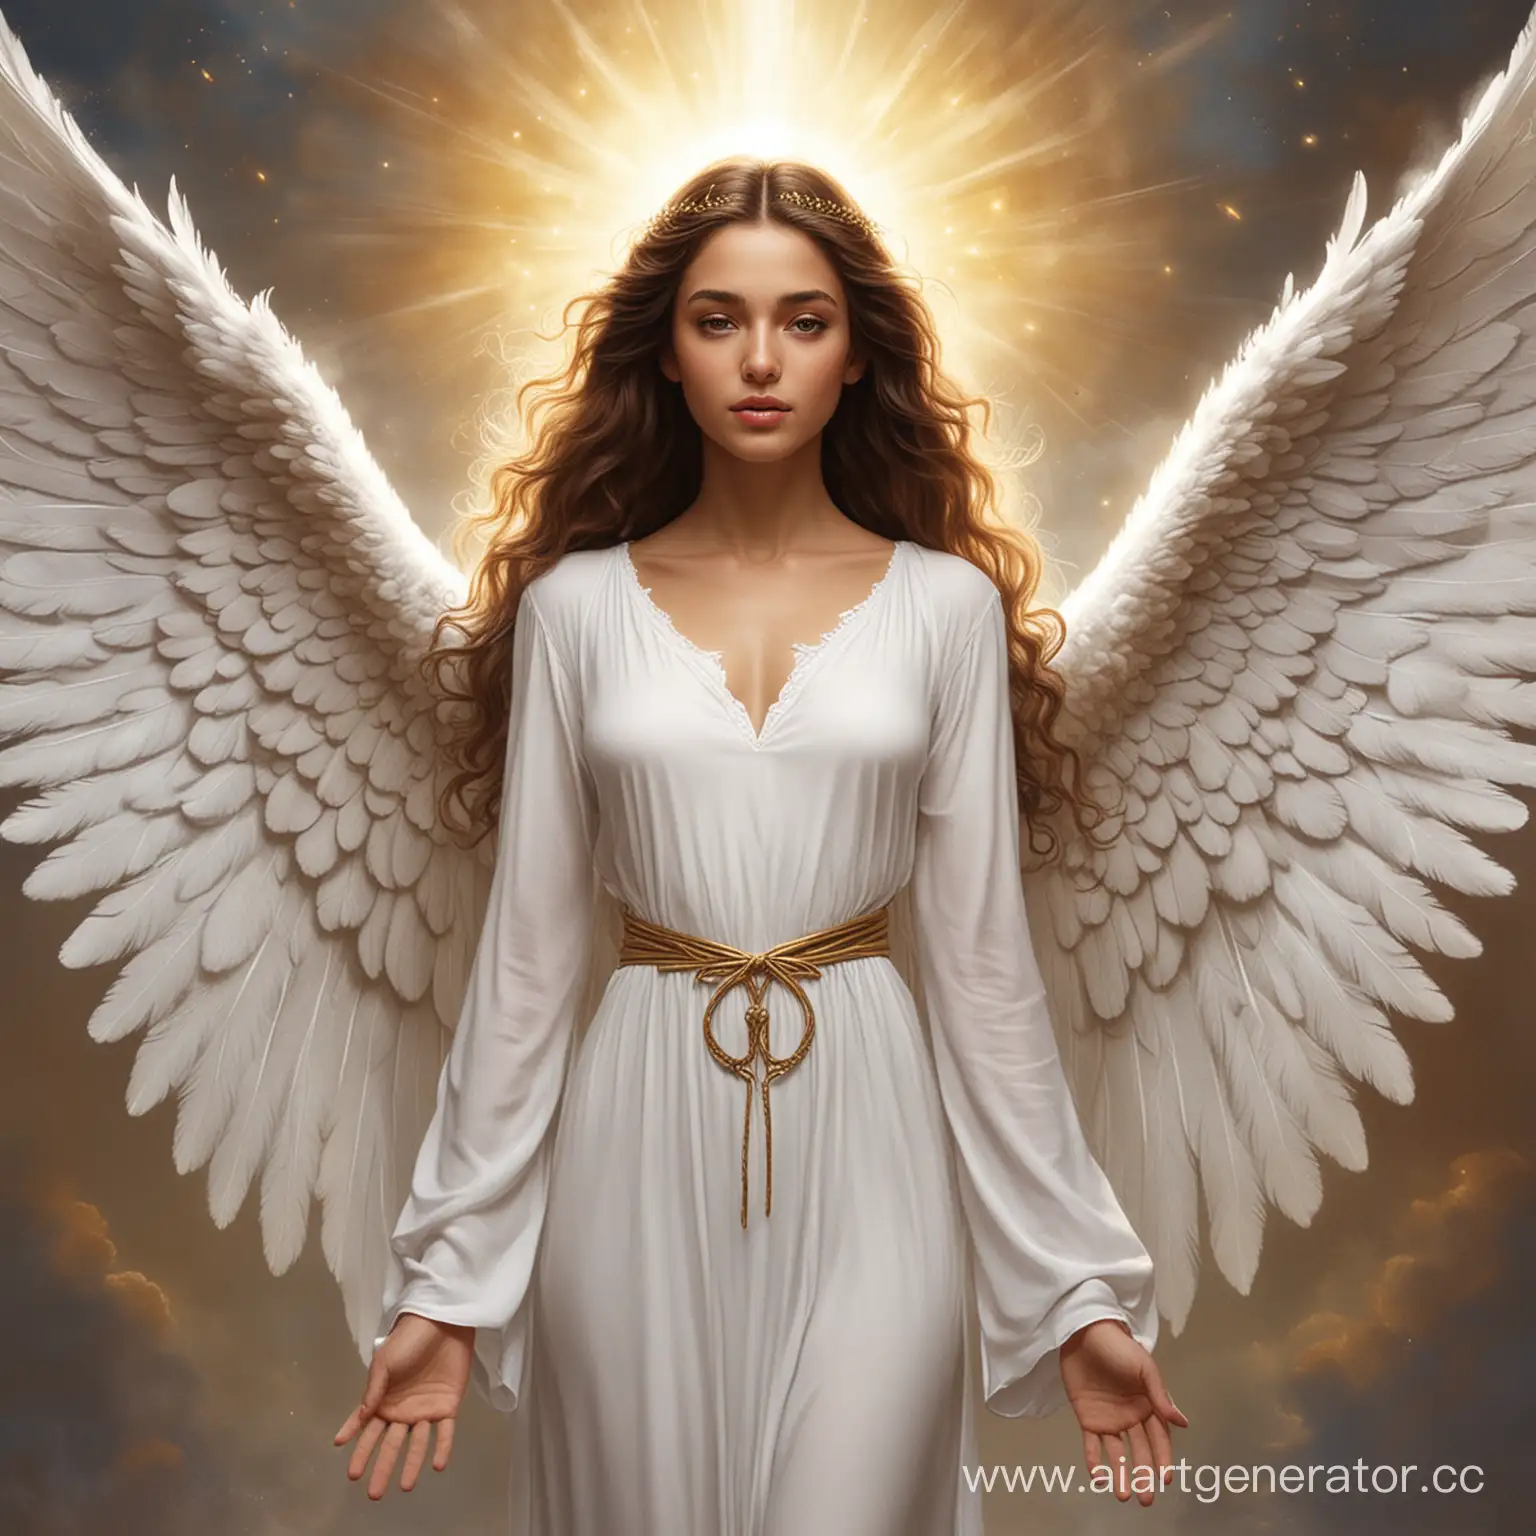 Амалиель – ангел, который вселяется в тела людей для помощи